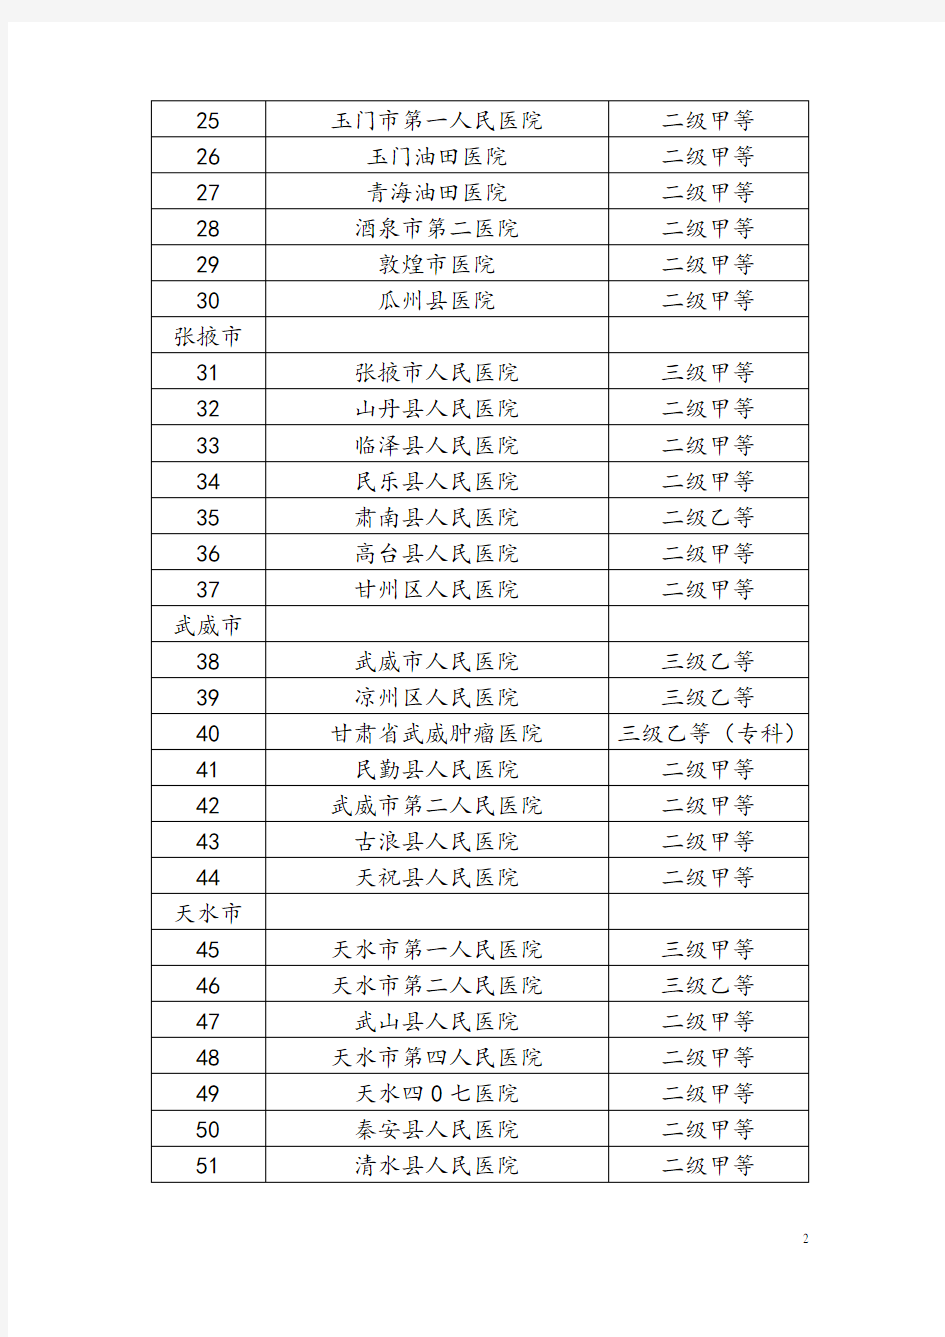 甘肃省综合医院及部分专科医院等级一览表